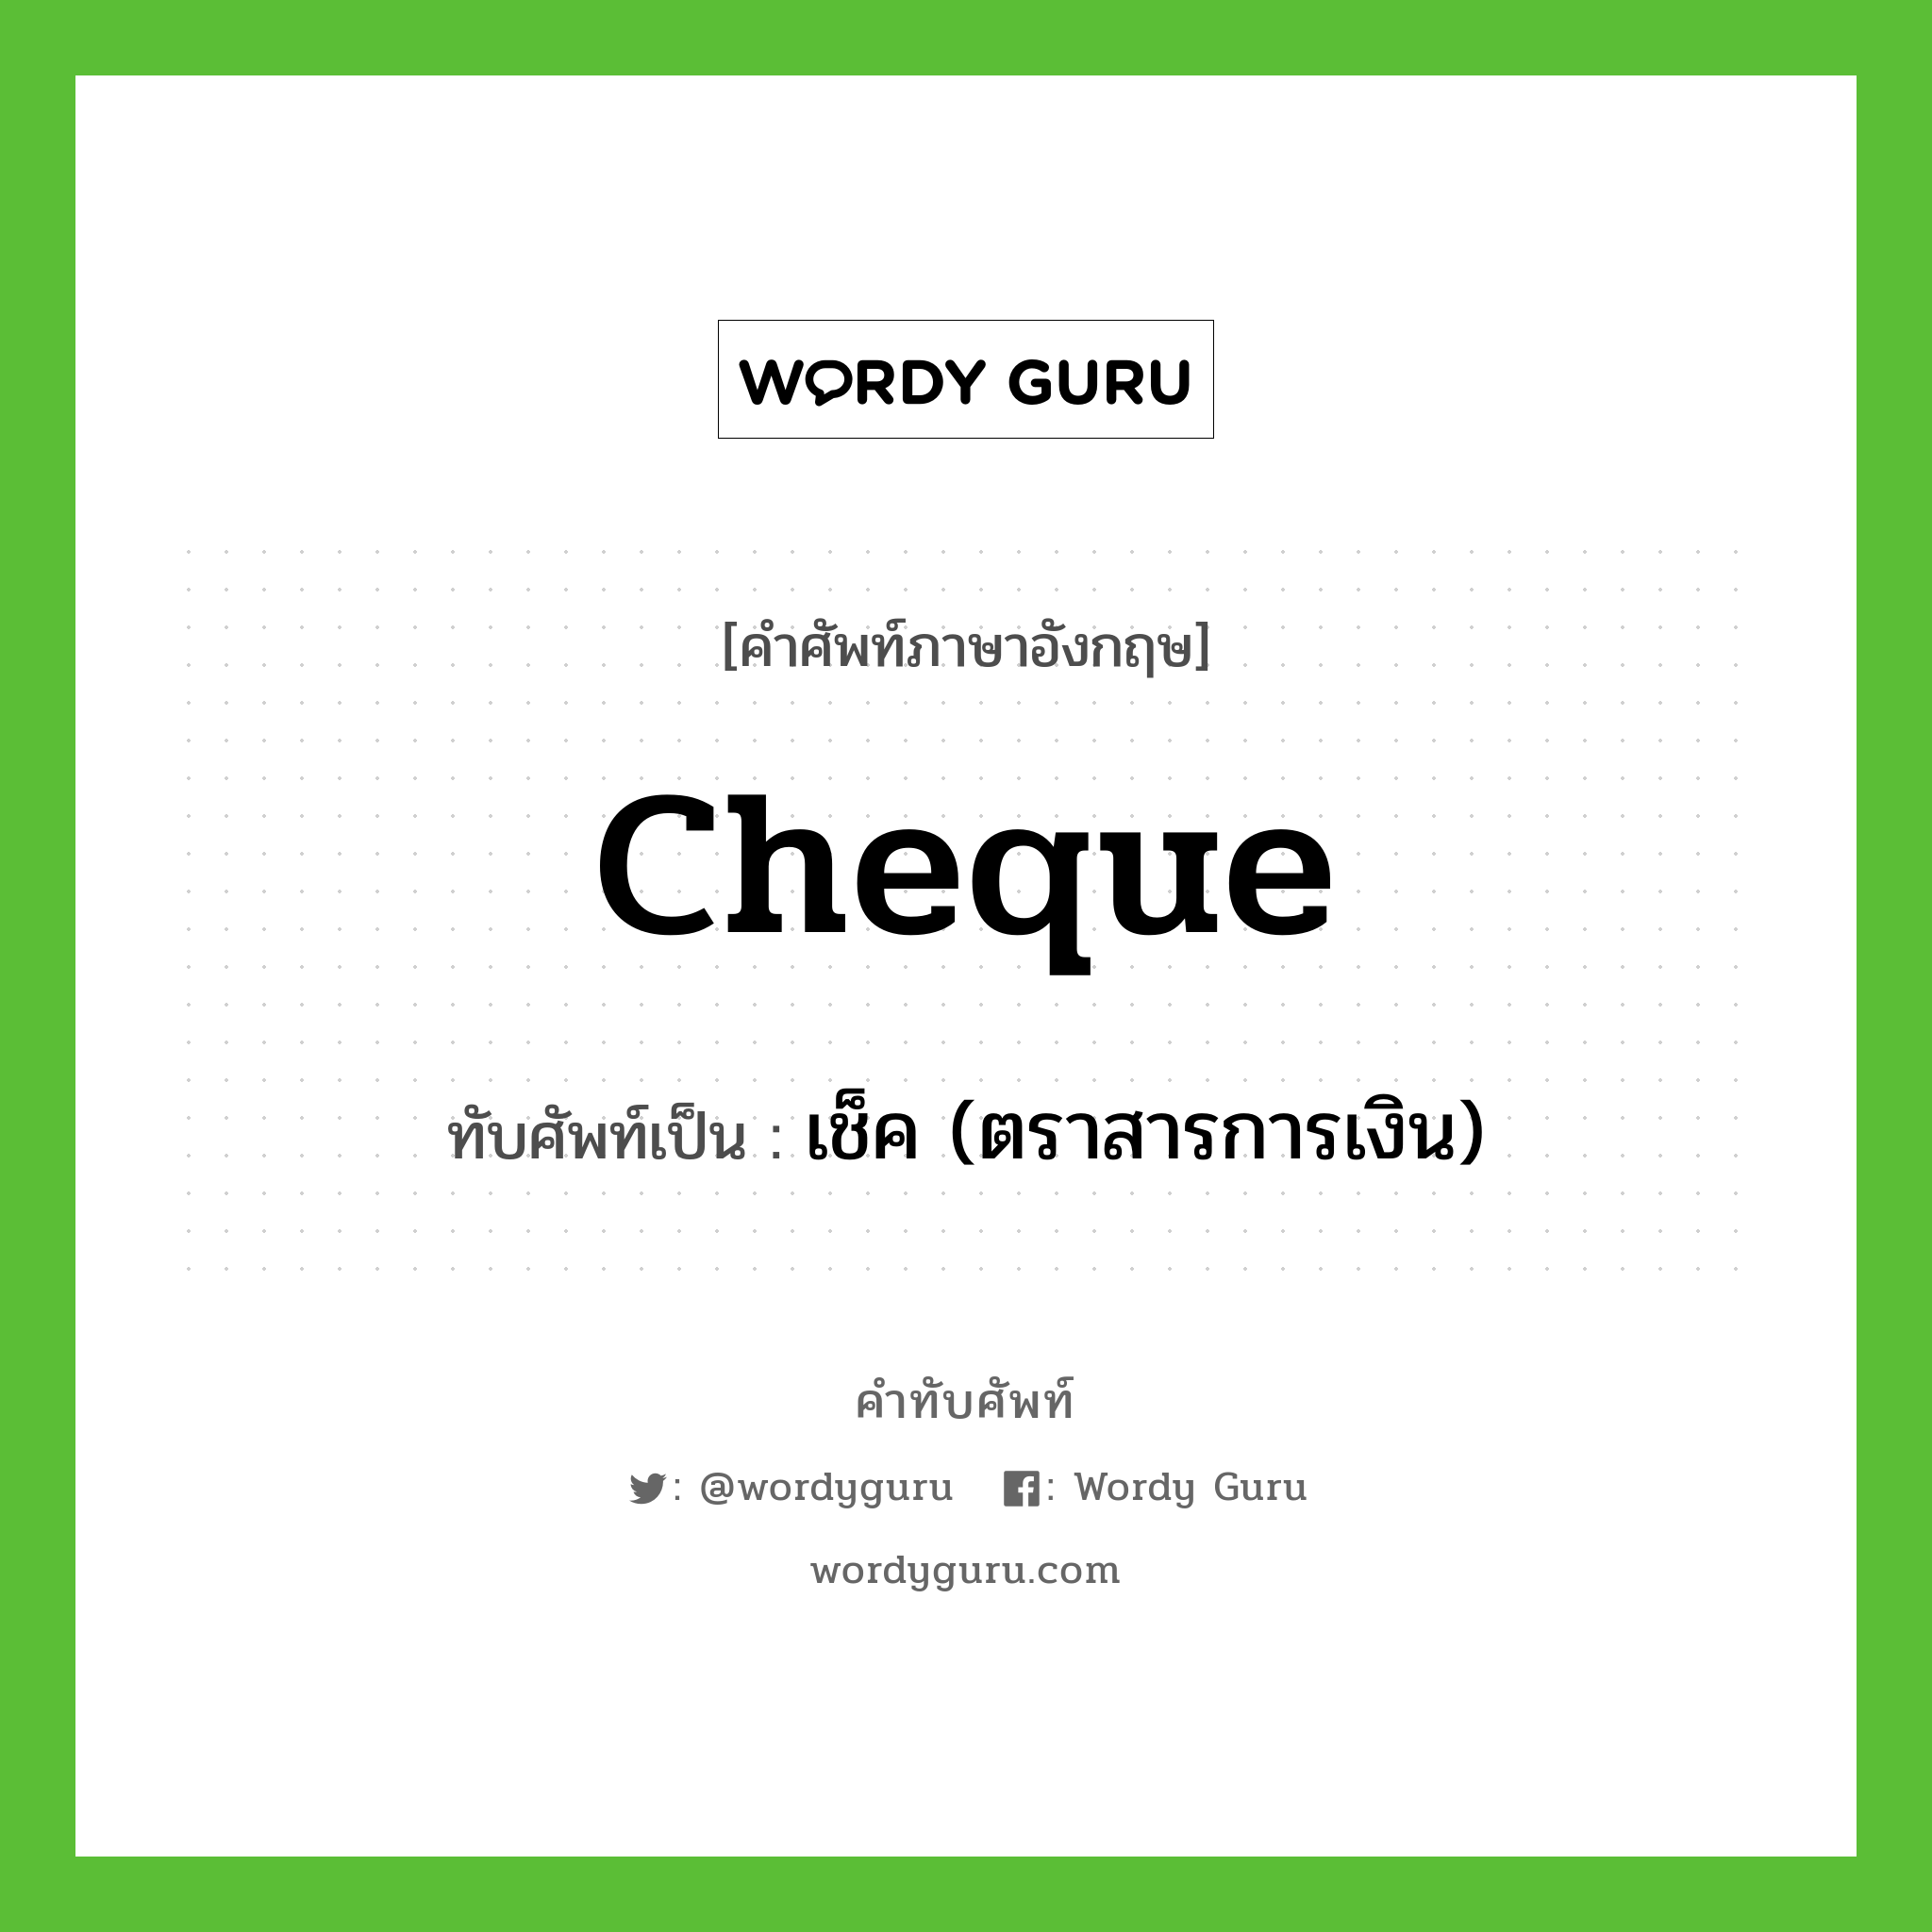 cheque เขียนเป็นคำไทยว่าอะไร?, คำศัพท์ภาษาอังกฤษ cheque ทับศัพท์เป็น เช็ค (ตราสารการเงิน)